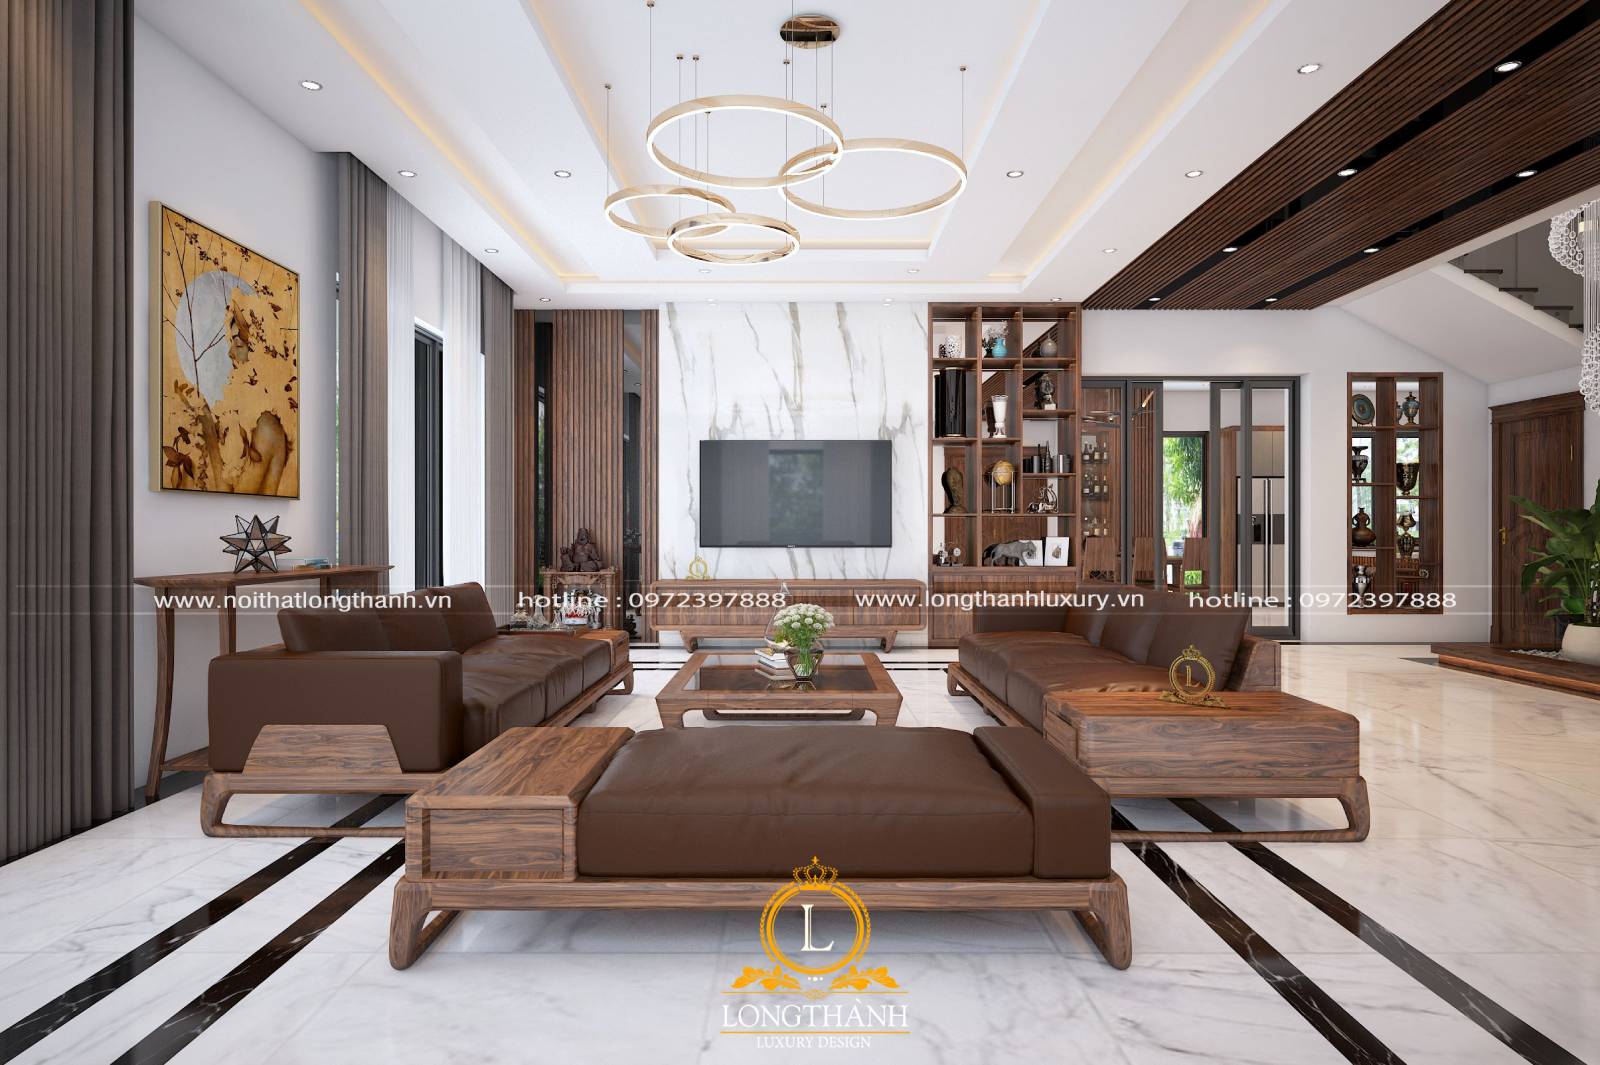 Thiết kế phòng khách biệt thự hiện đại với bộ bàn ghế sofa gỗ Sồi tự nhiên